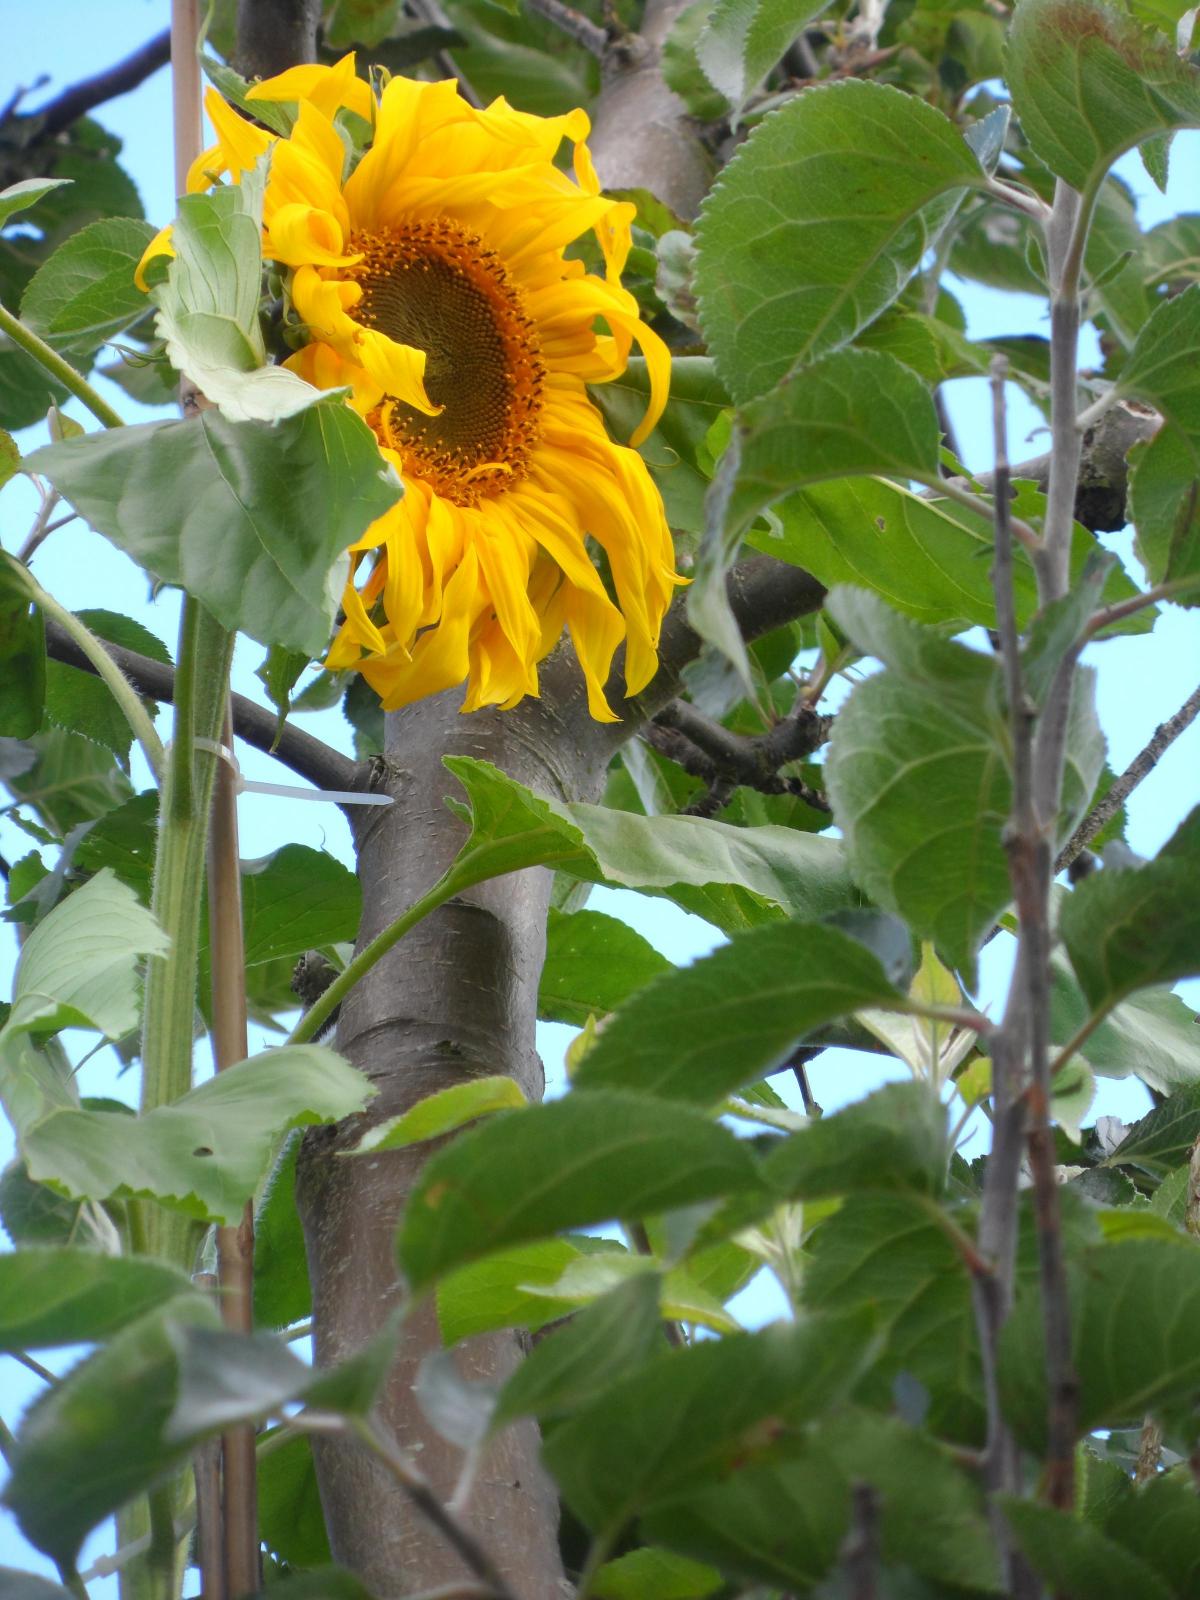 Ray Gott's 12ft 5 sunflower in Emley Moor